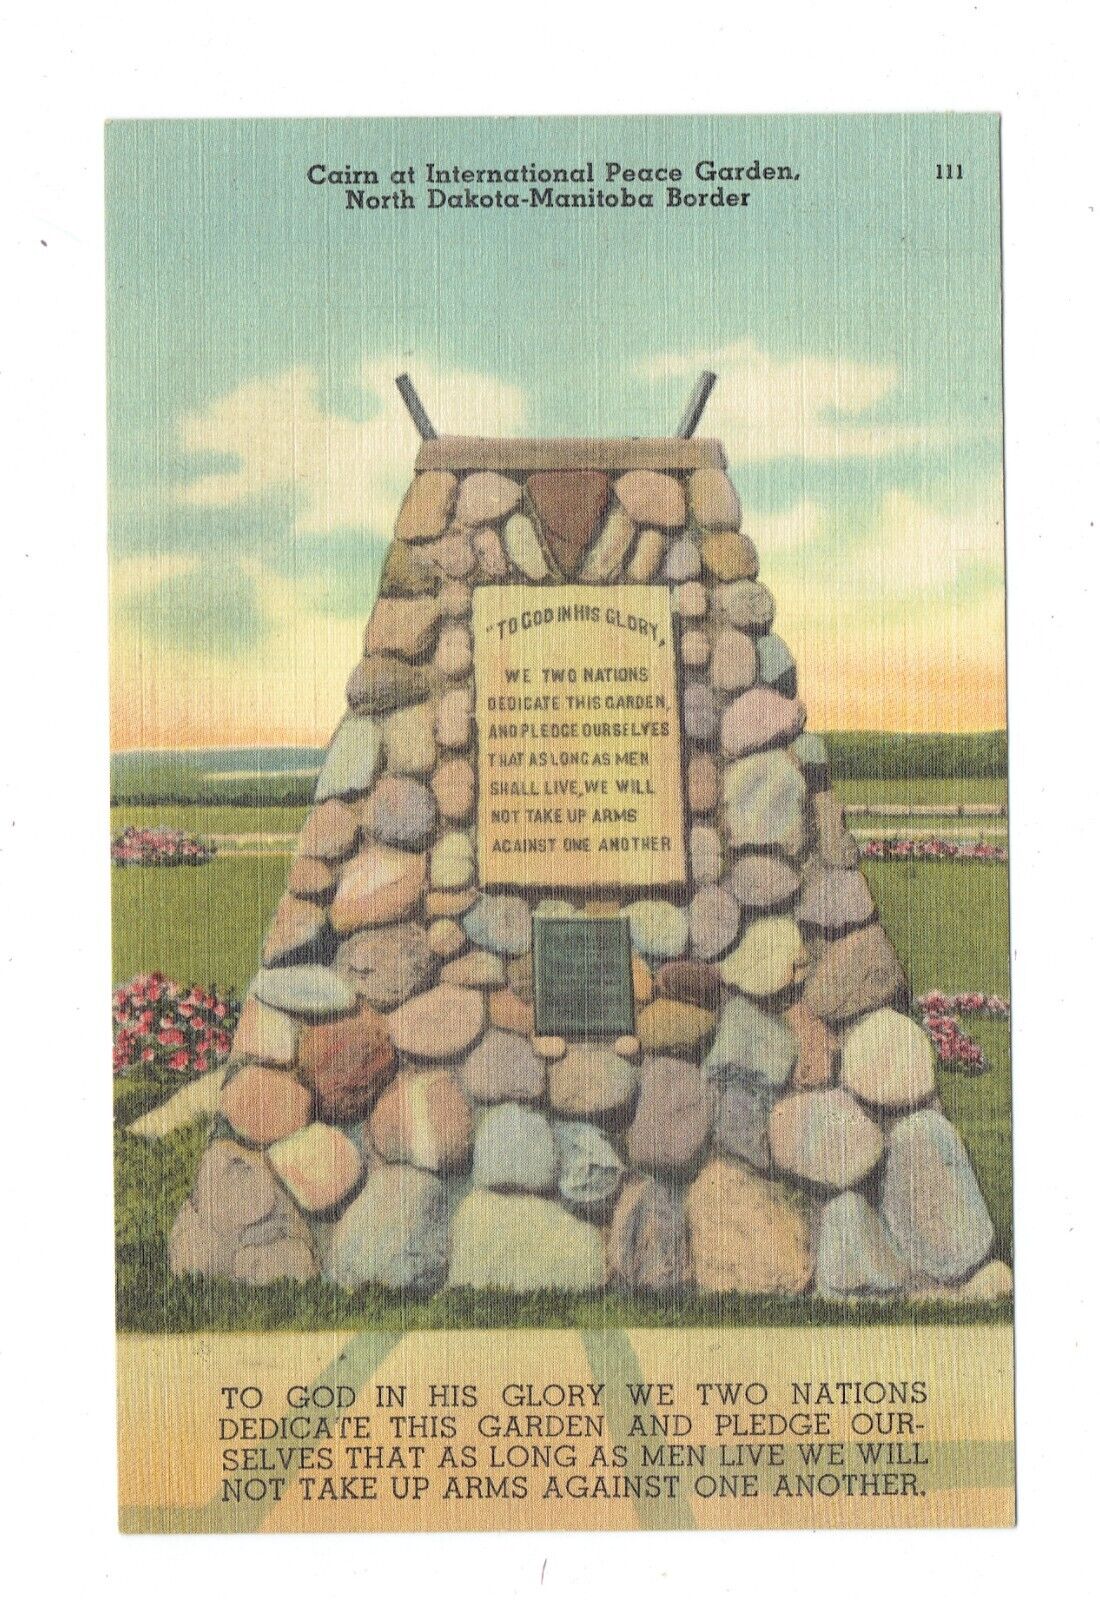 Postcard Vin (1)Cairn at North Dakota-Manitoba Garden 111/75522 P 7/18/1951  370